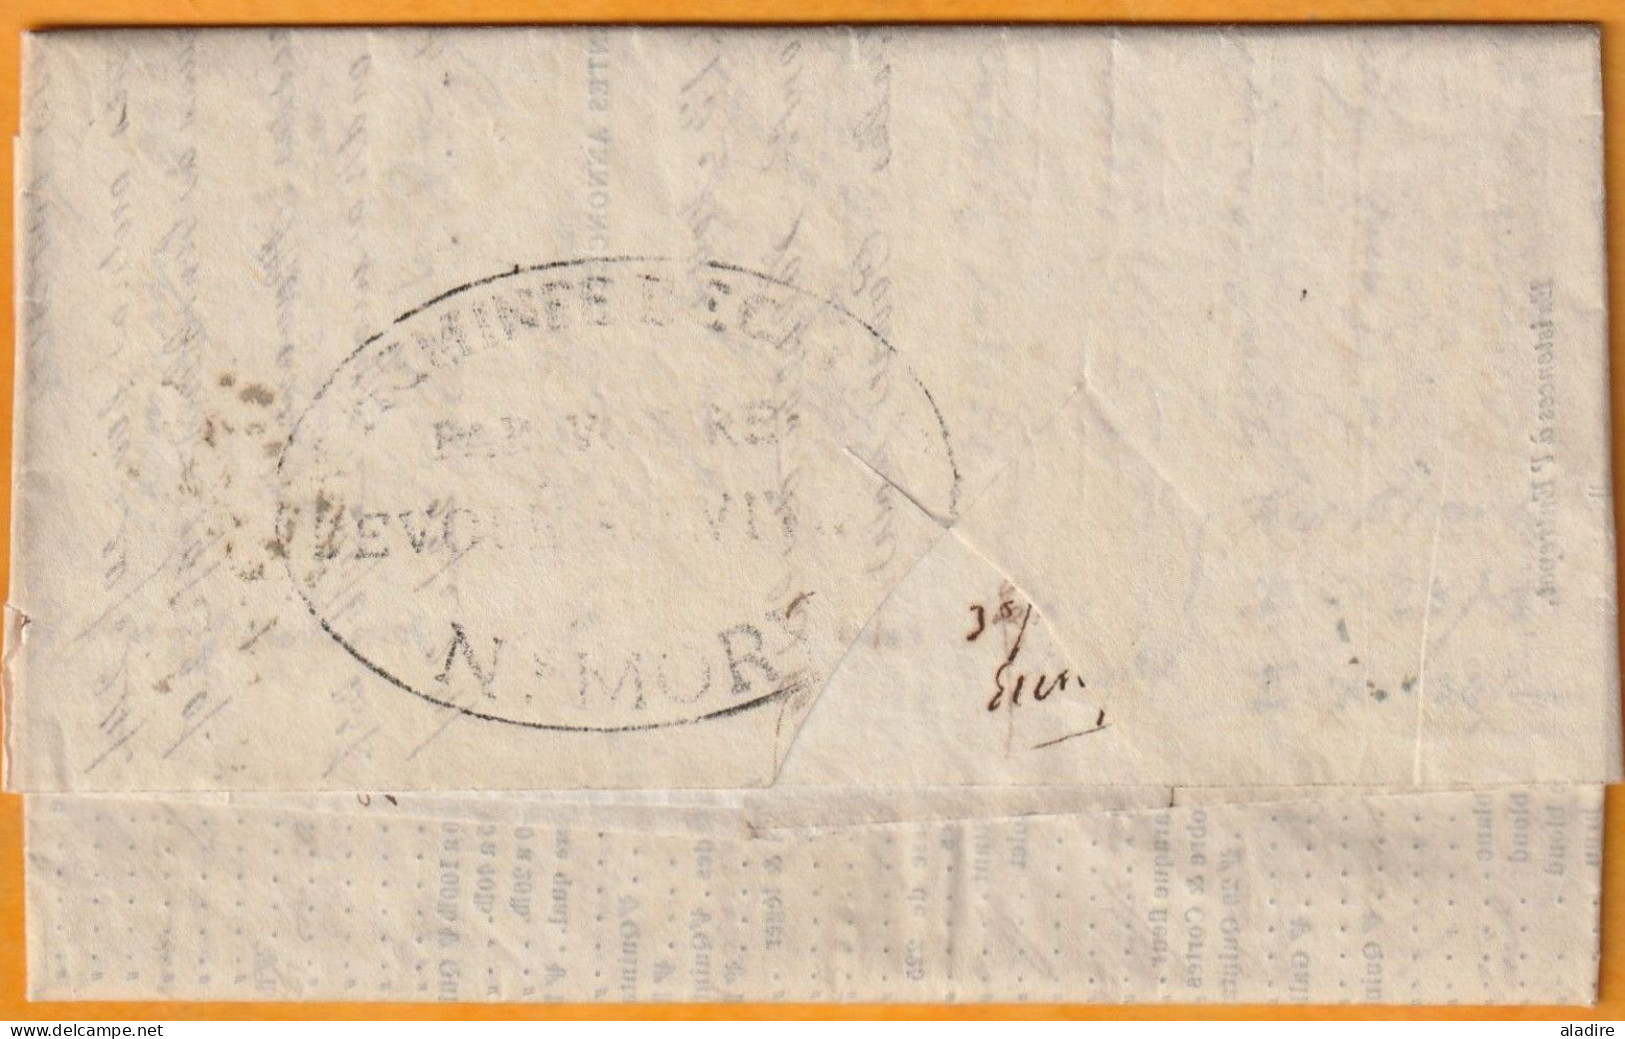 1832 - KWIV - LAC 3 Pages En Français De London Londres Vers Lyon, France - Acheminée Par MORY, 61 CALAIS - Postmark Collection